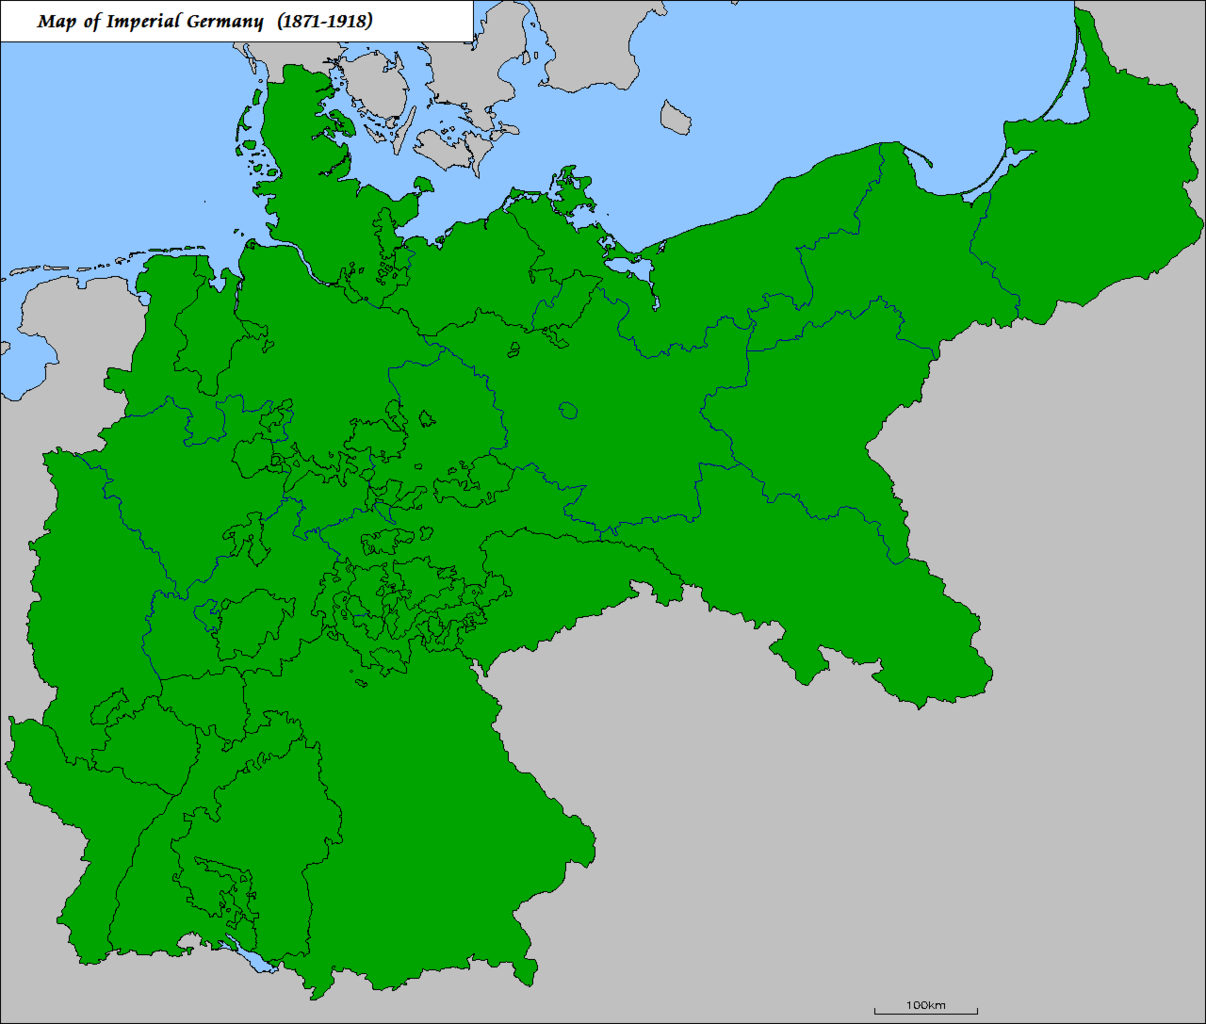 Kaiserreich Map